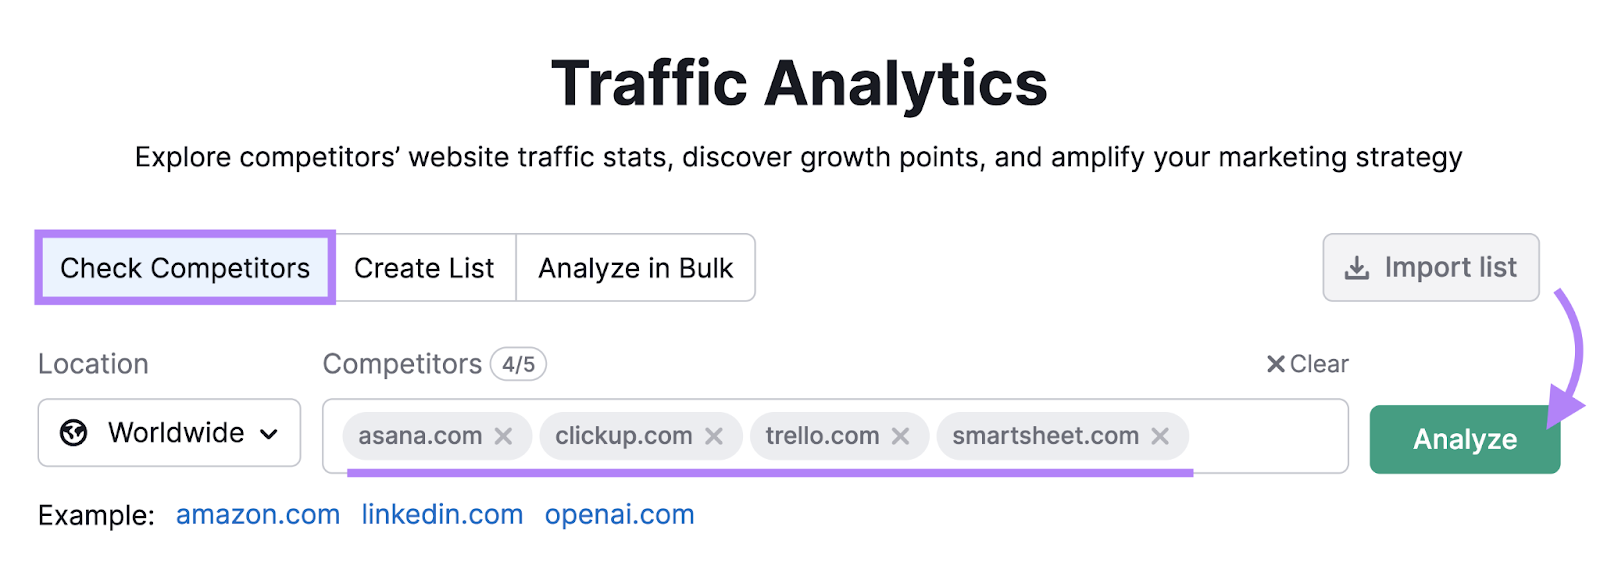 "asana.com" "clickup.com" "trello.com" and "smartsheet.com" domains entered into the Traffic Analytics tool